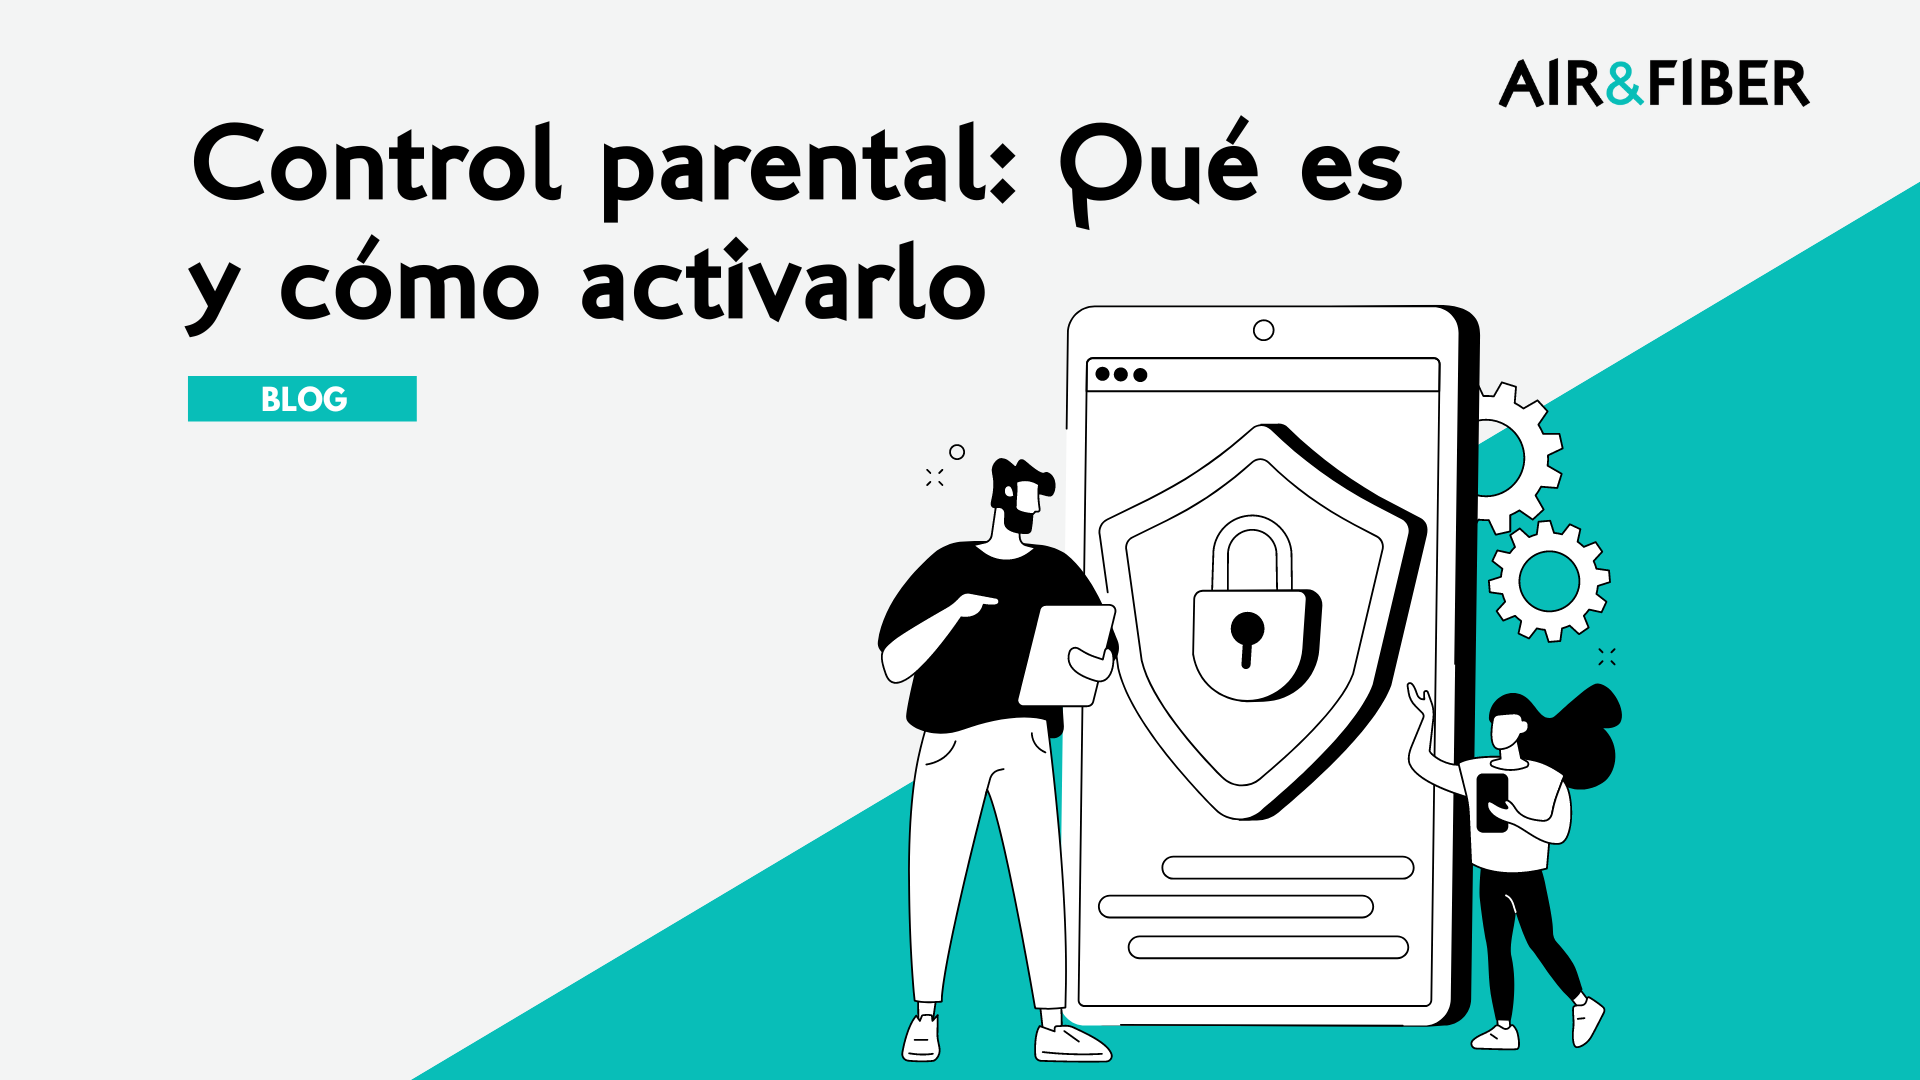 Ilustración de un padre y una hija utilizando dispositivos digitales y junto a un dispositivo móvil, simbolizando la protección y seguridad que ofrece el control parental.